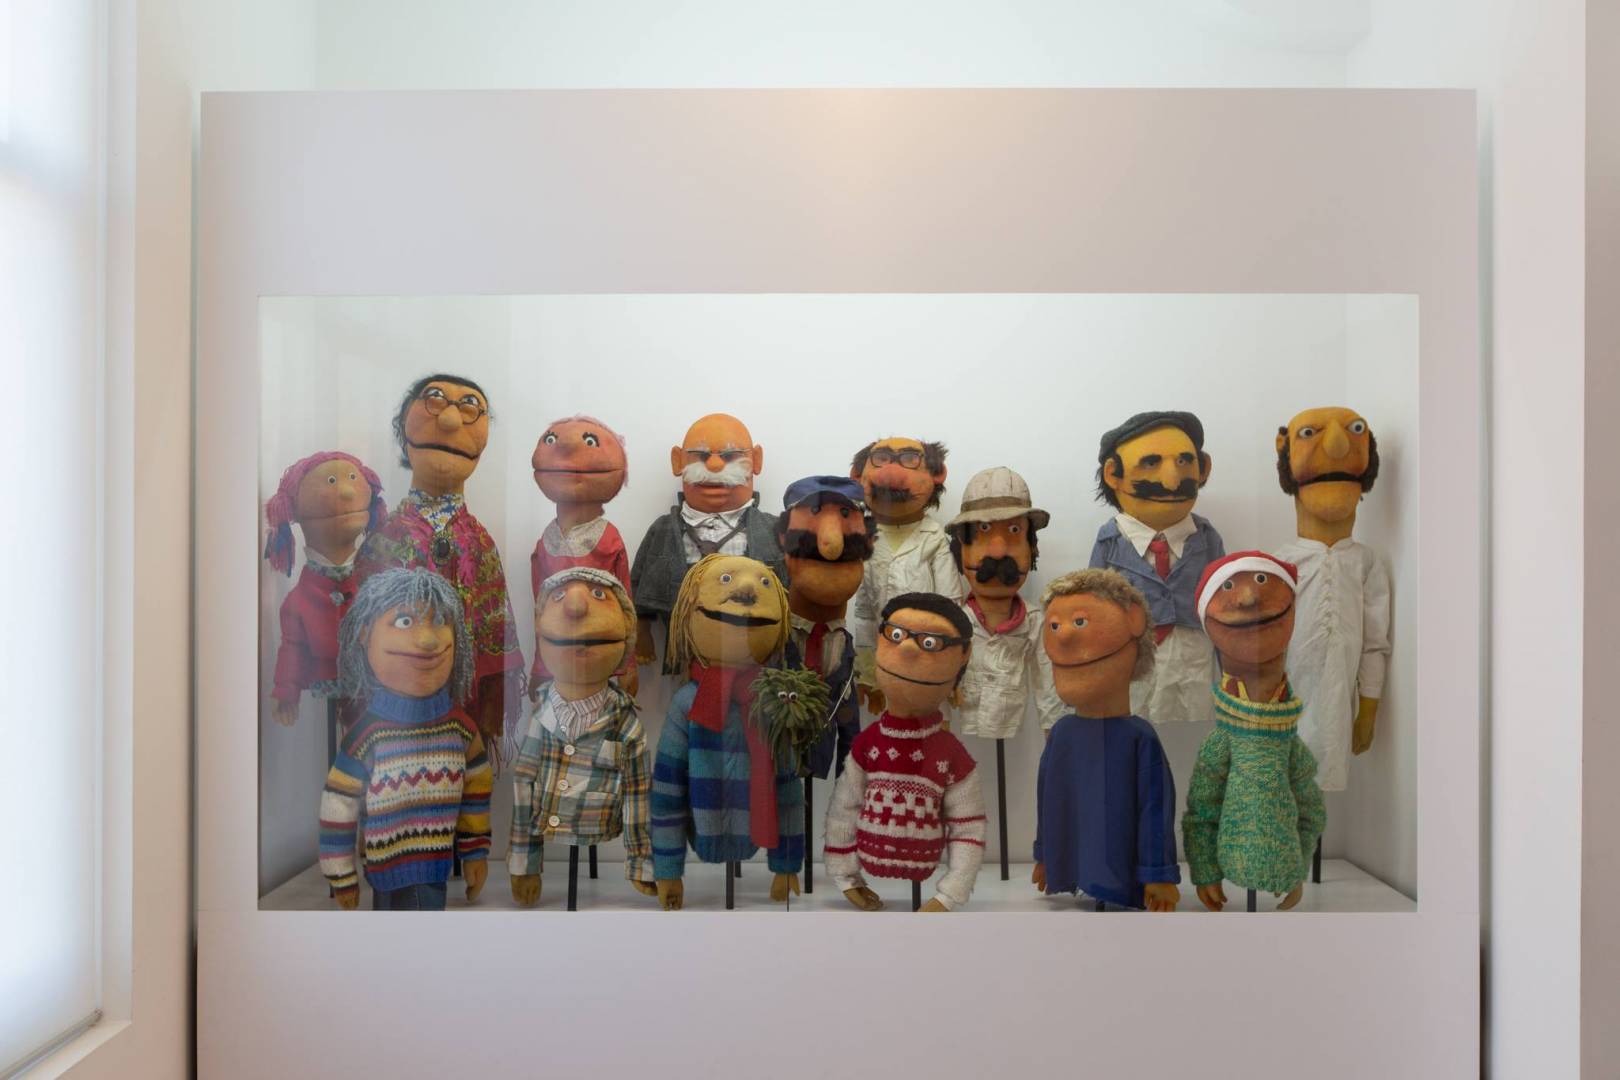 Museu das Marionetas do Porto